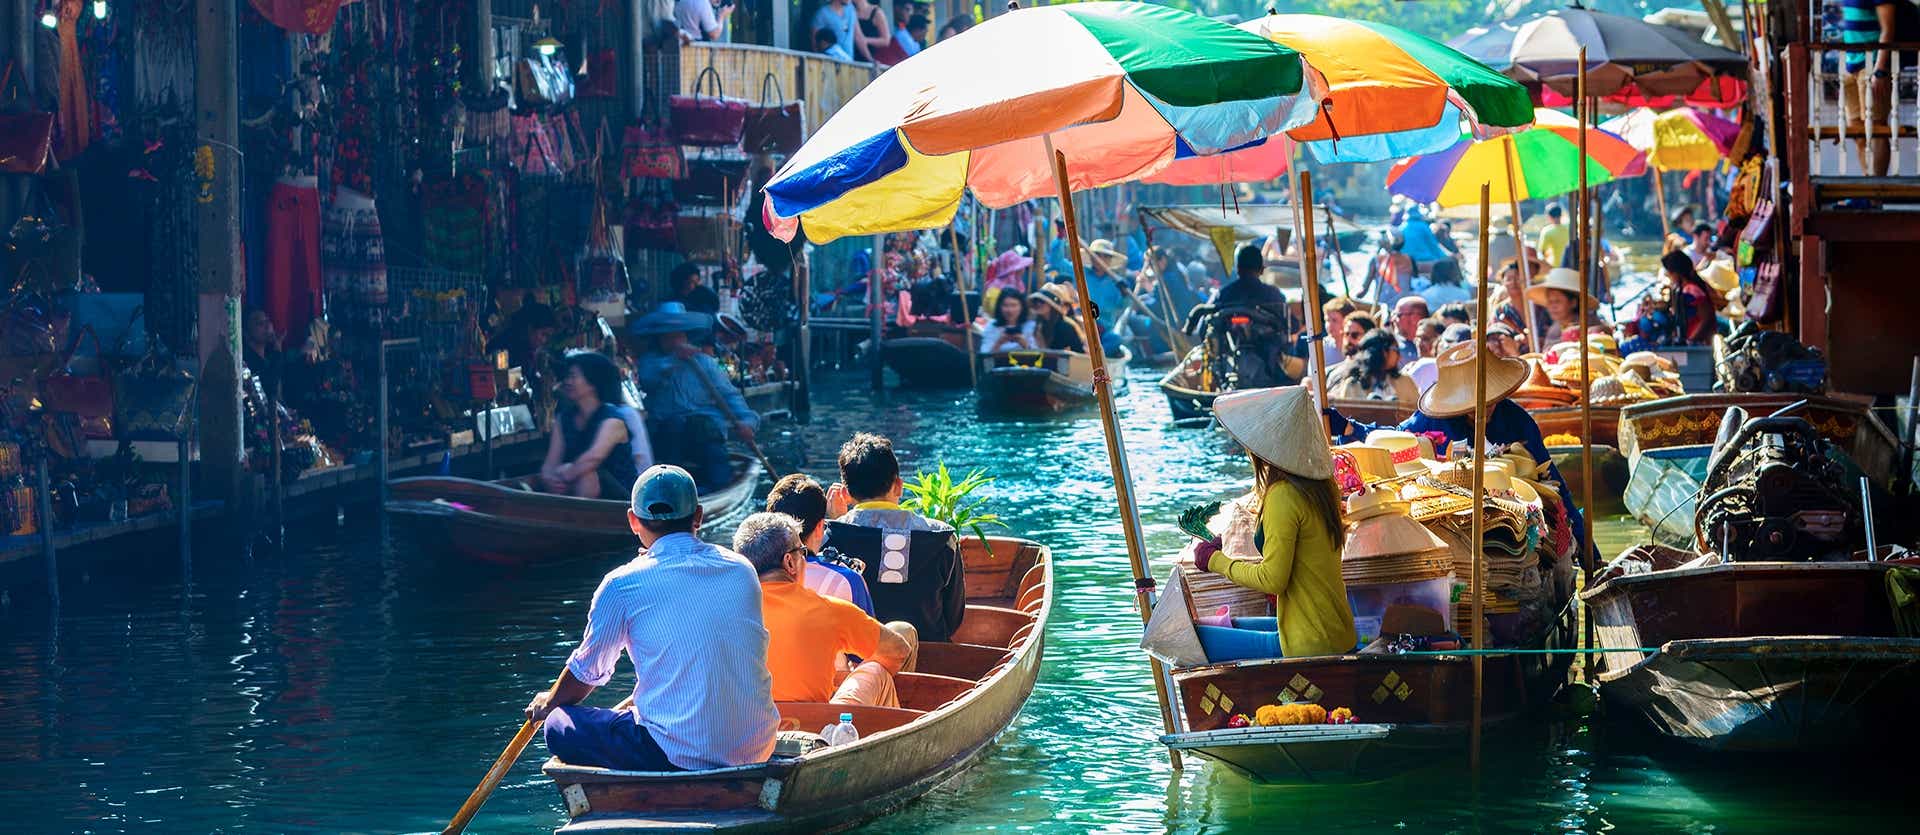 Floating Market <span class="iconos separador"></span> Bangkok